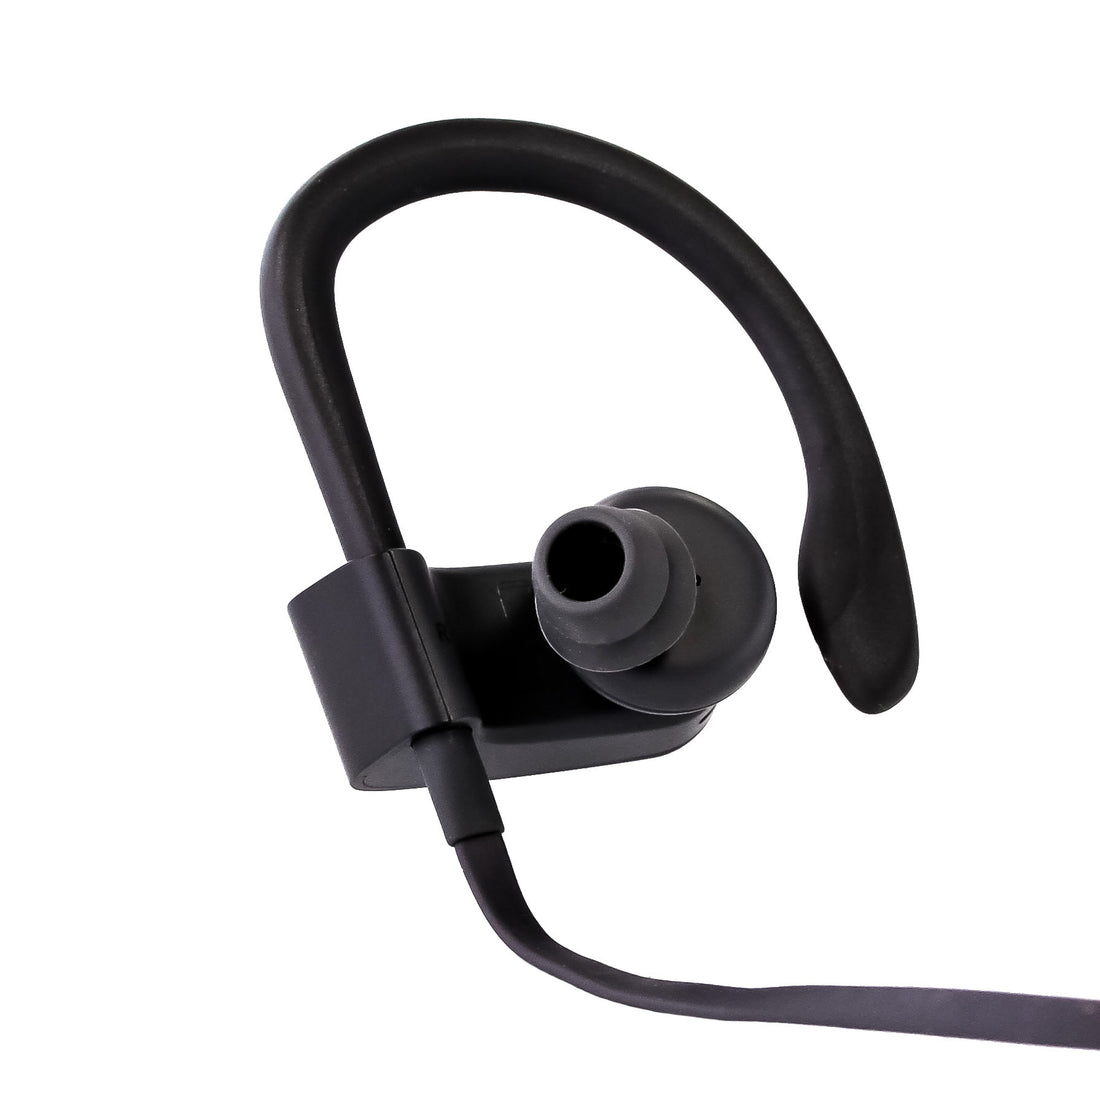 Beats By Dr. Dre PowerBeats3 Wireless In-Ear Headphones - Black (Certified Refurbished)